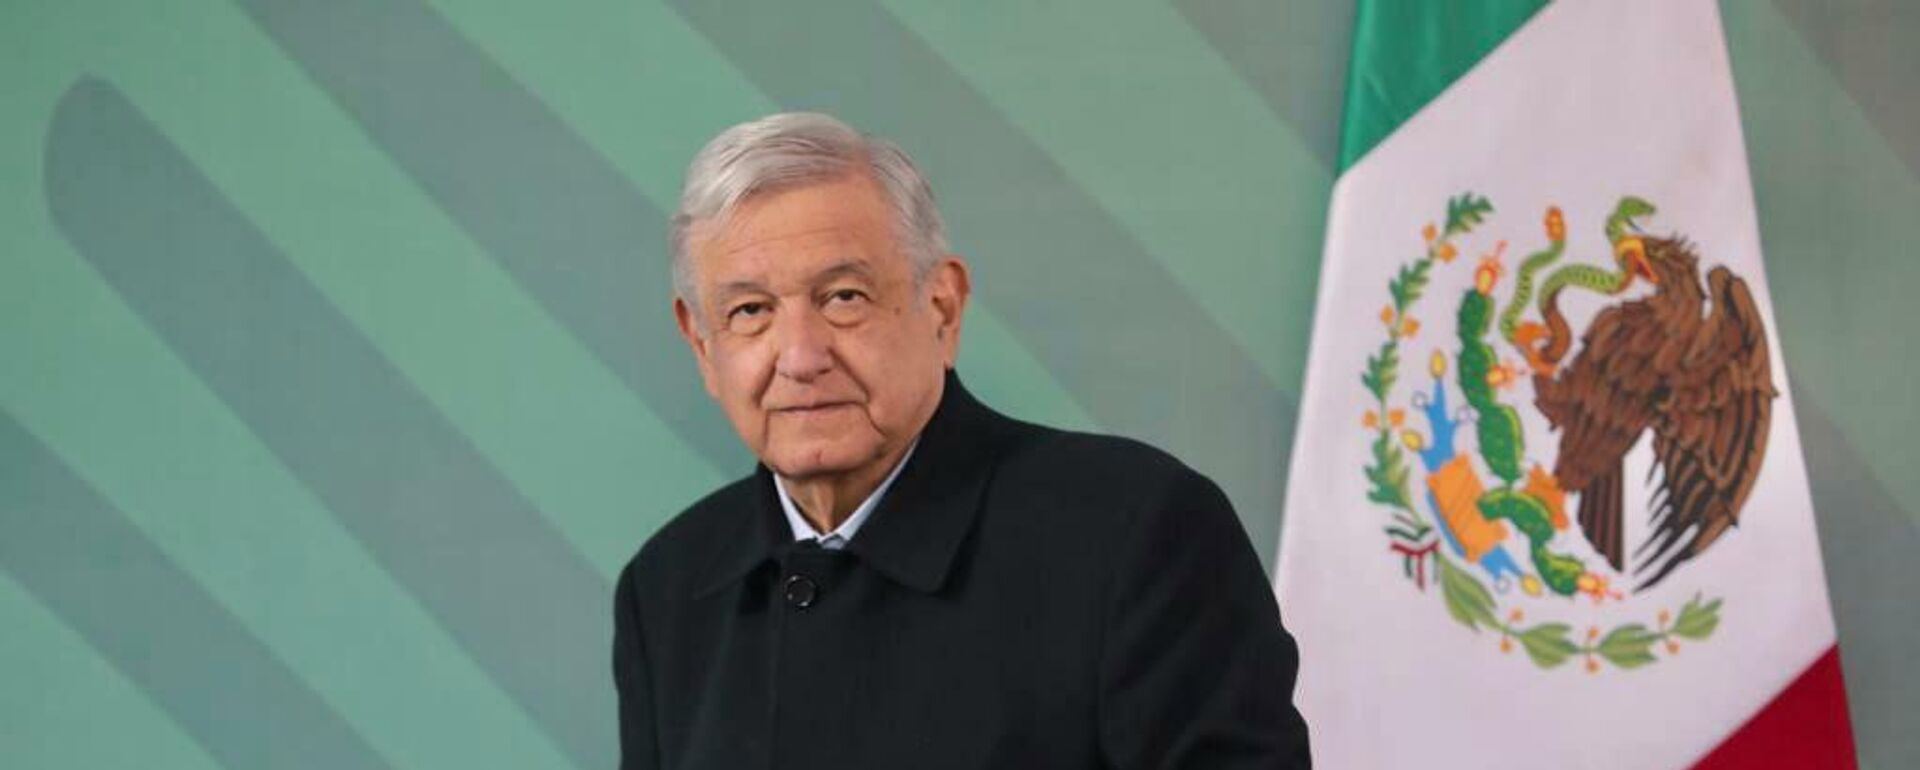 Andrés Manuel López Obrador, presidente de México - Sputnik Mundo, 1920, 08.12.2021